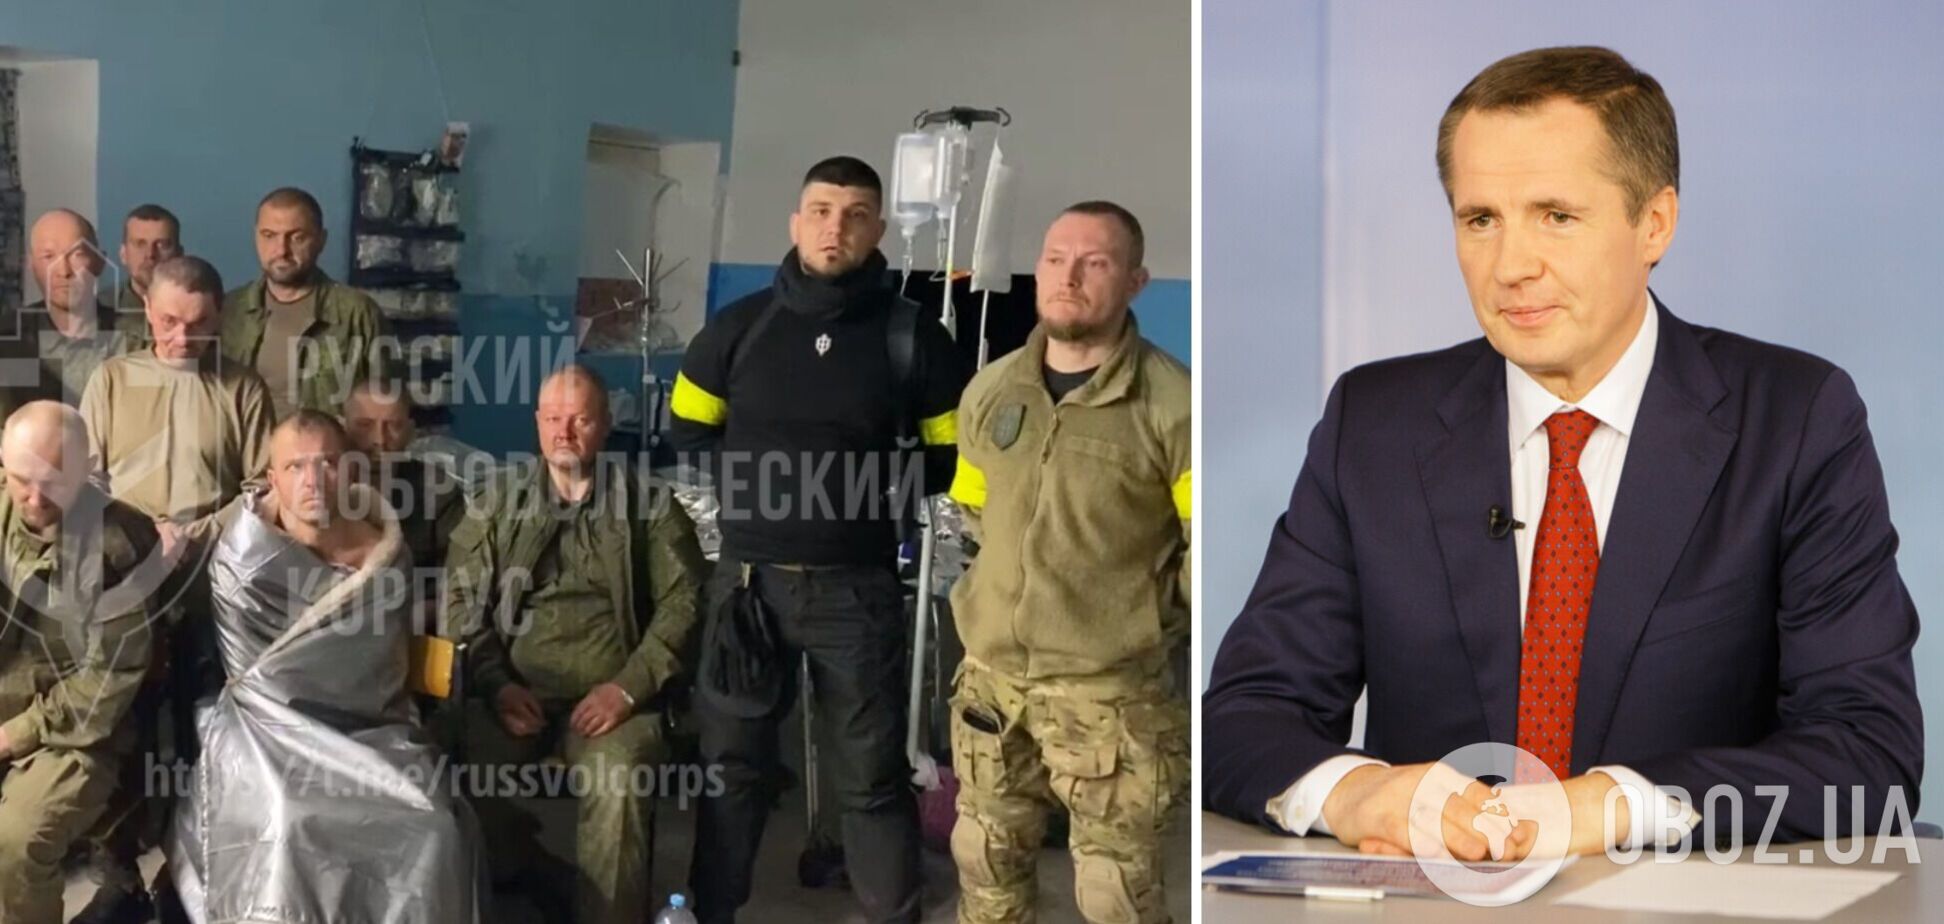 Губернатор Белгородской области не пришел на встречу с РДК, чтобы забрать пленных: их передадут Украине. Видео